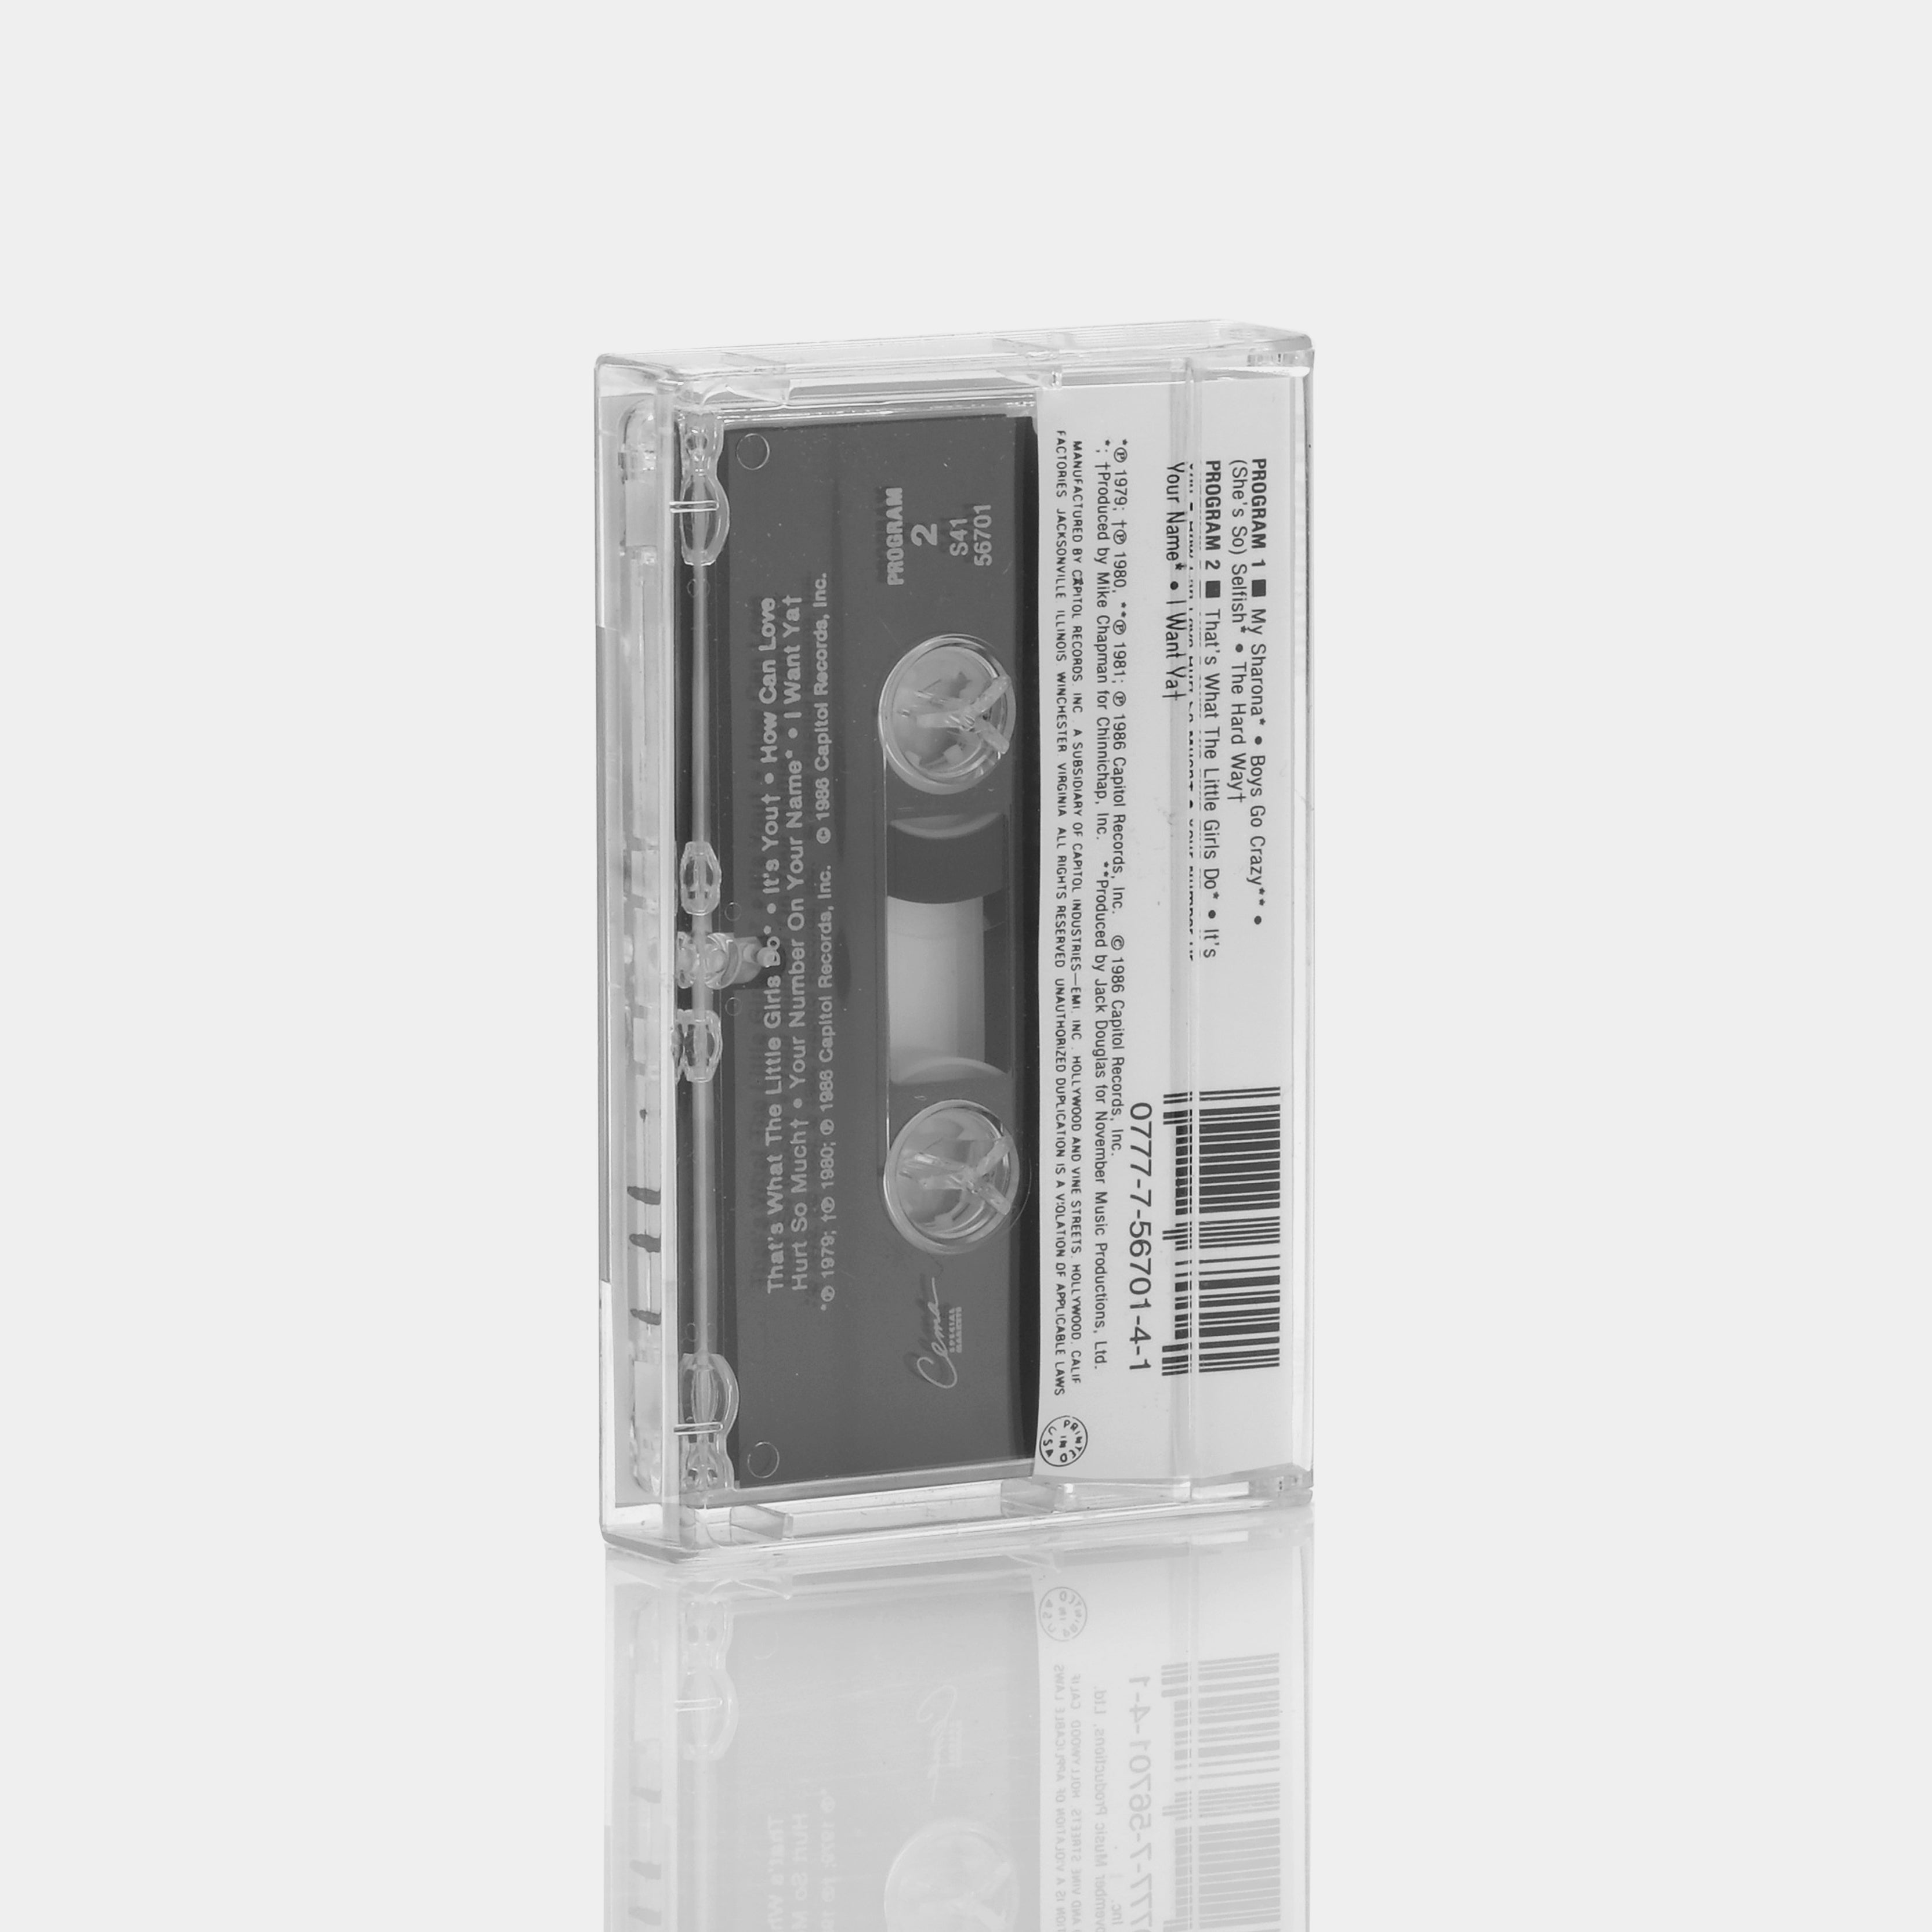 The Knack - My Sharona Cassette Tape